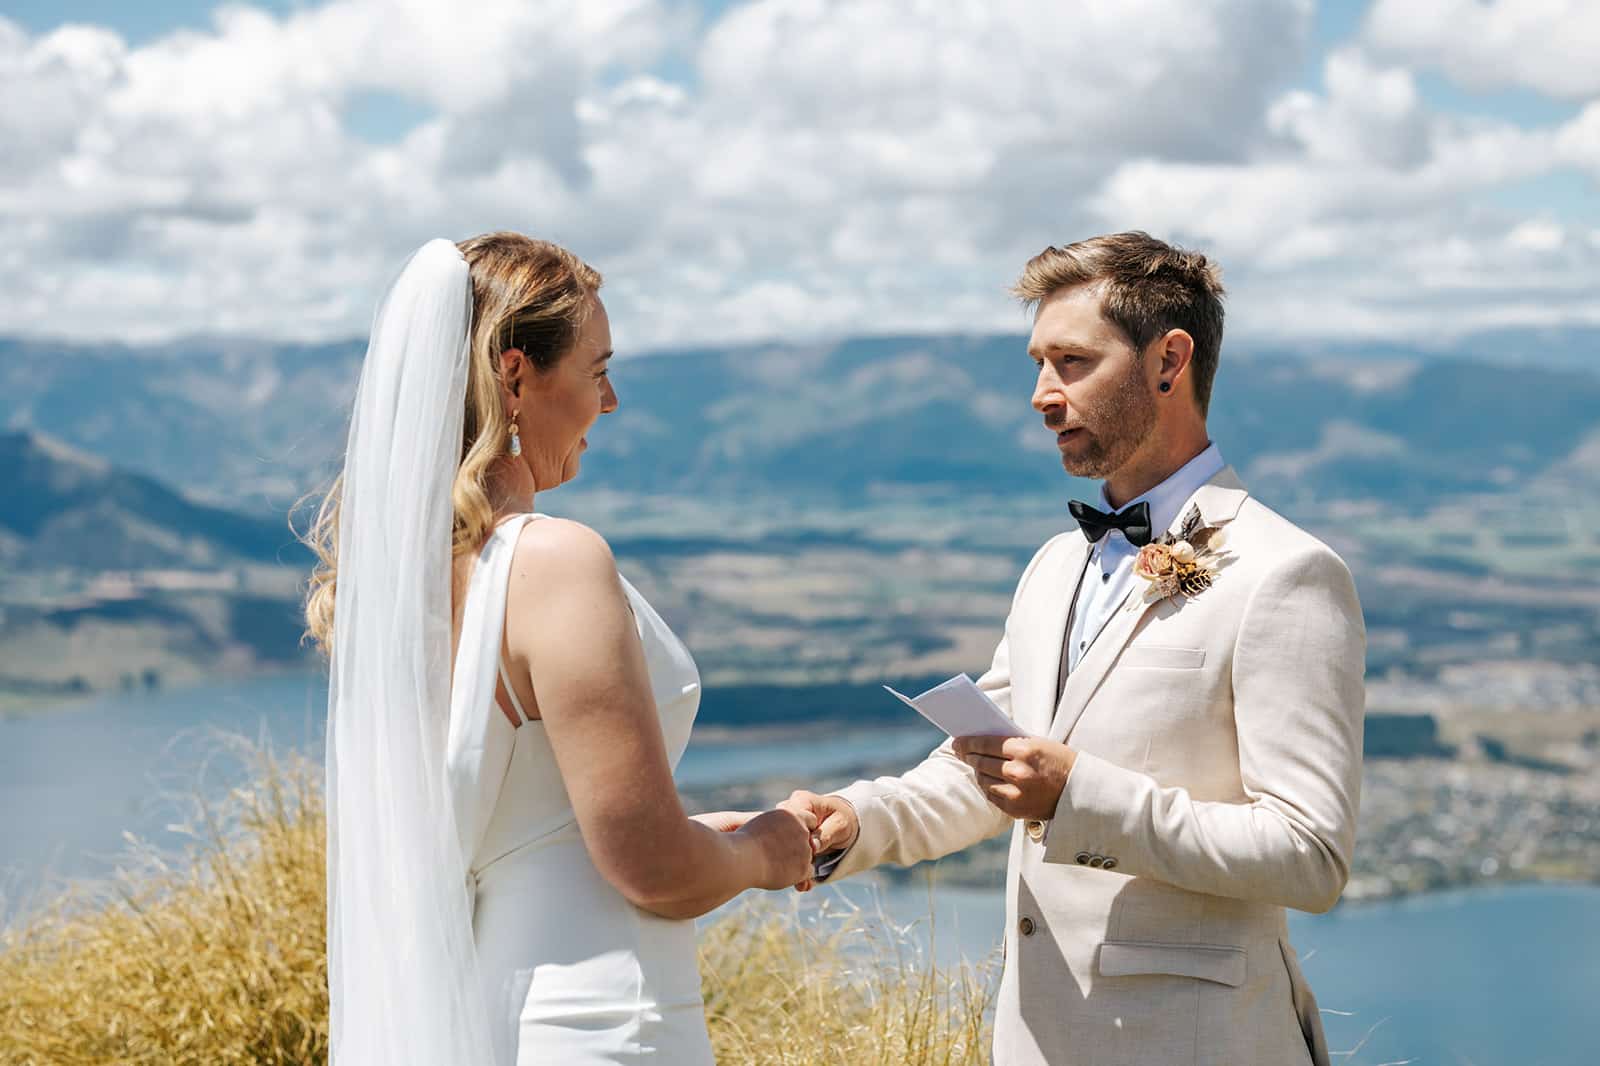 Heli Wedding ceremony on Coromandel Peak, Mt Roy, New Zealand